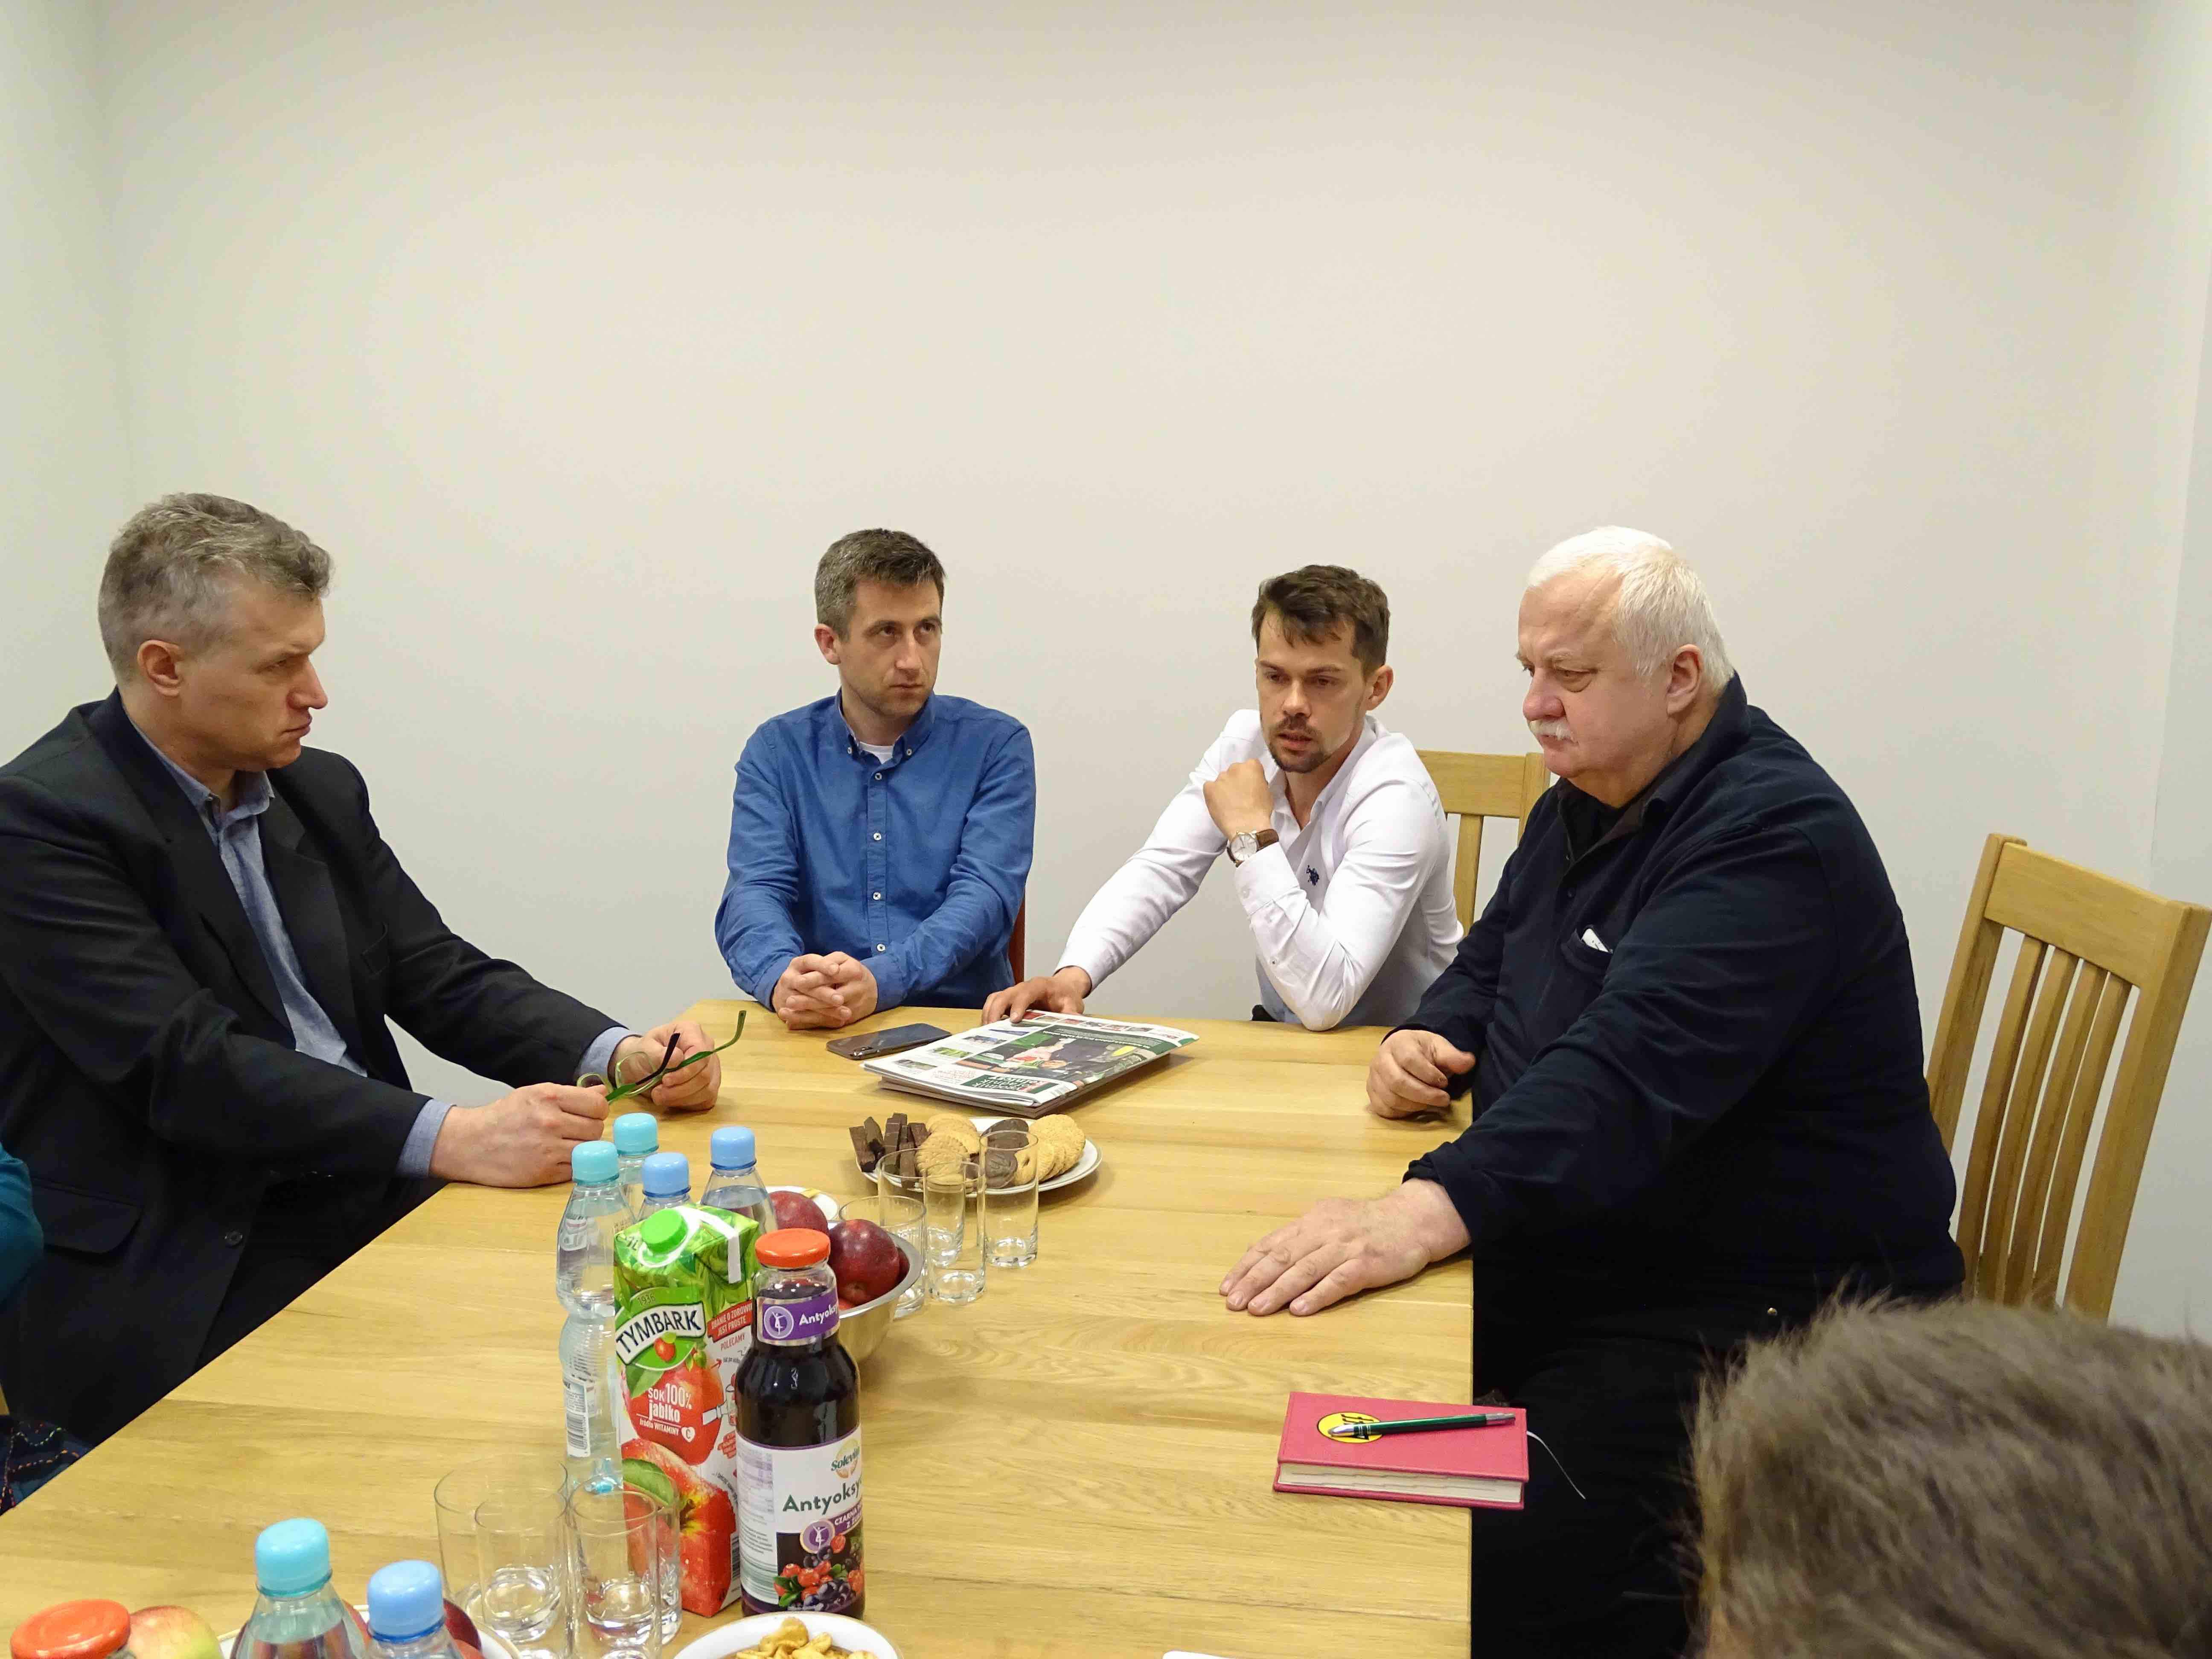 Debatę AGRO ring będą moderować redaktorzy naczelni Tygodnika Poradnika Rolniczego i liderzy Agro Unii (Fot. Paweł Mikos)